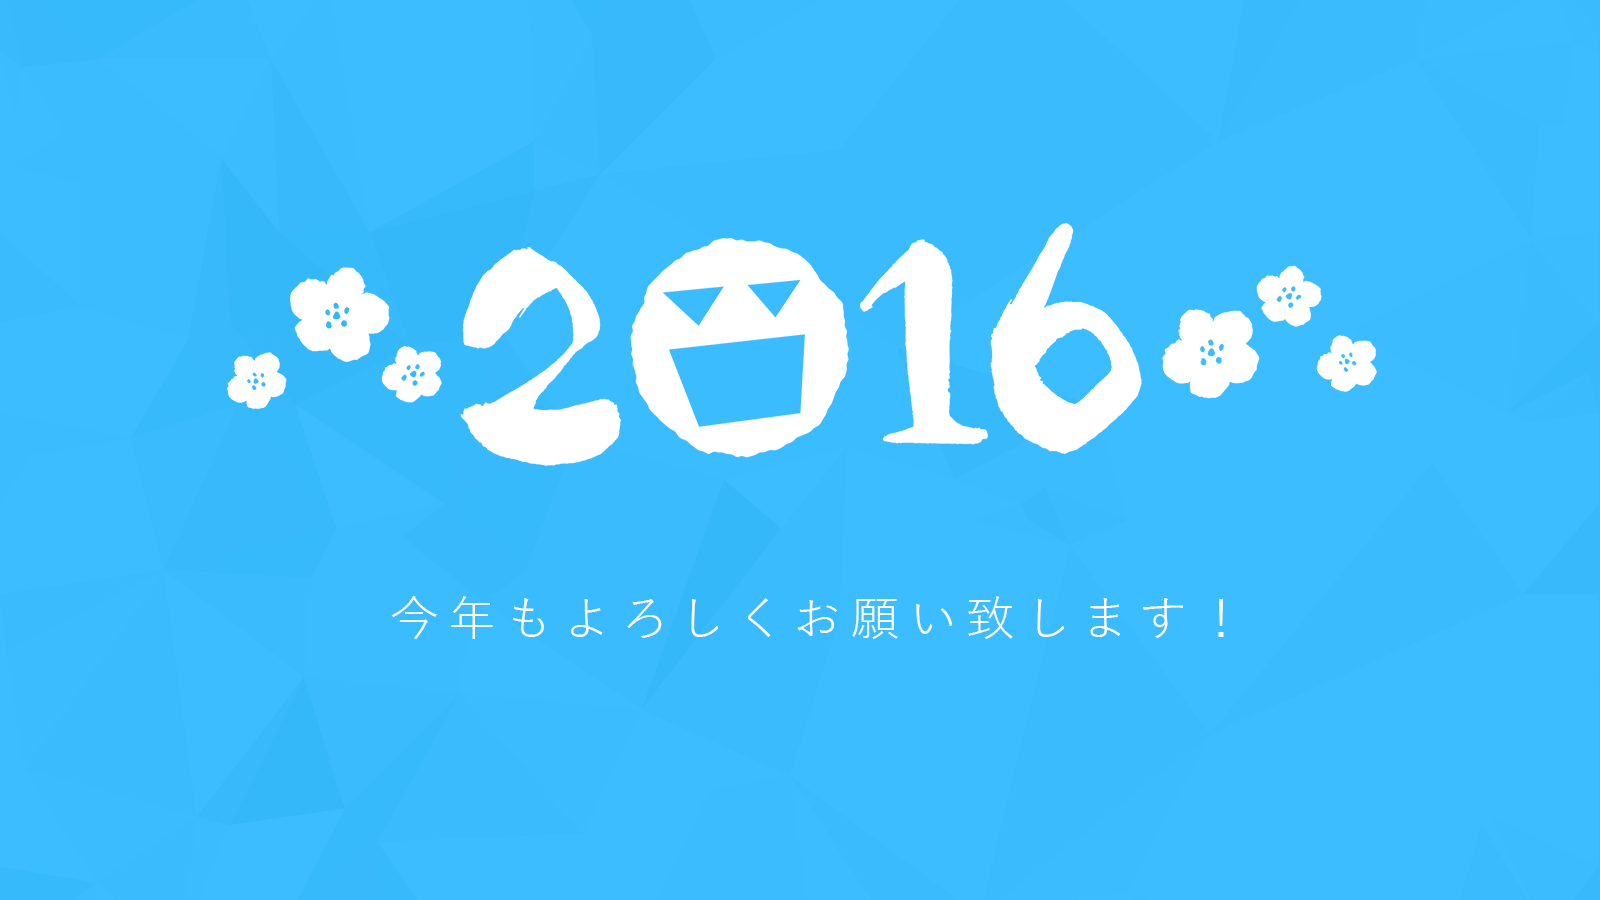 2016年！あけまして おめでとうございます！！のメインビジュアル